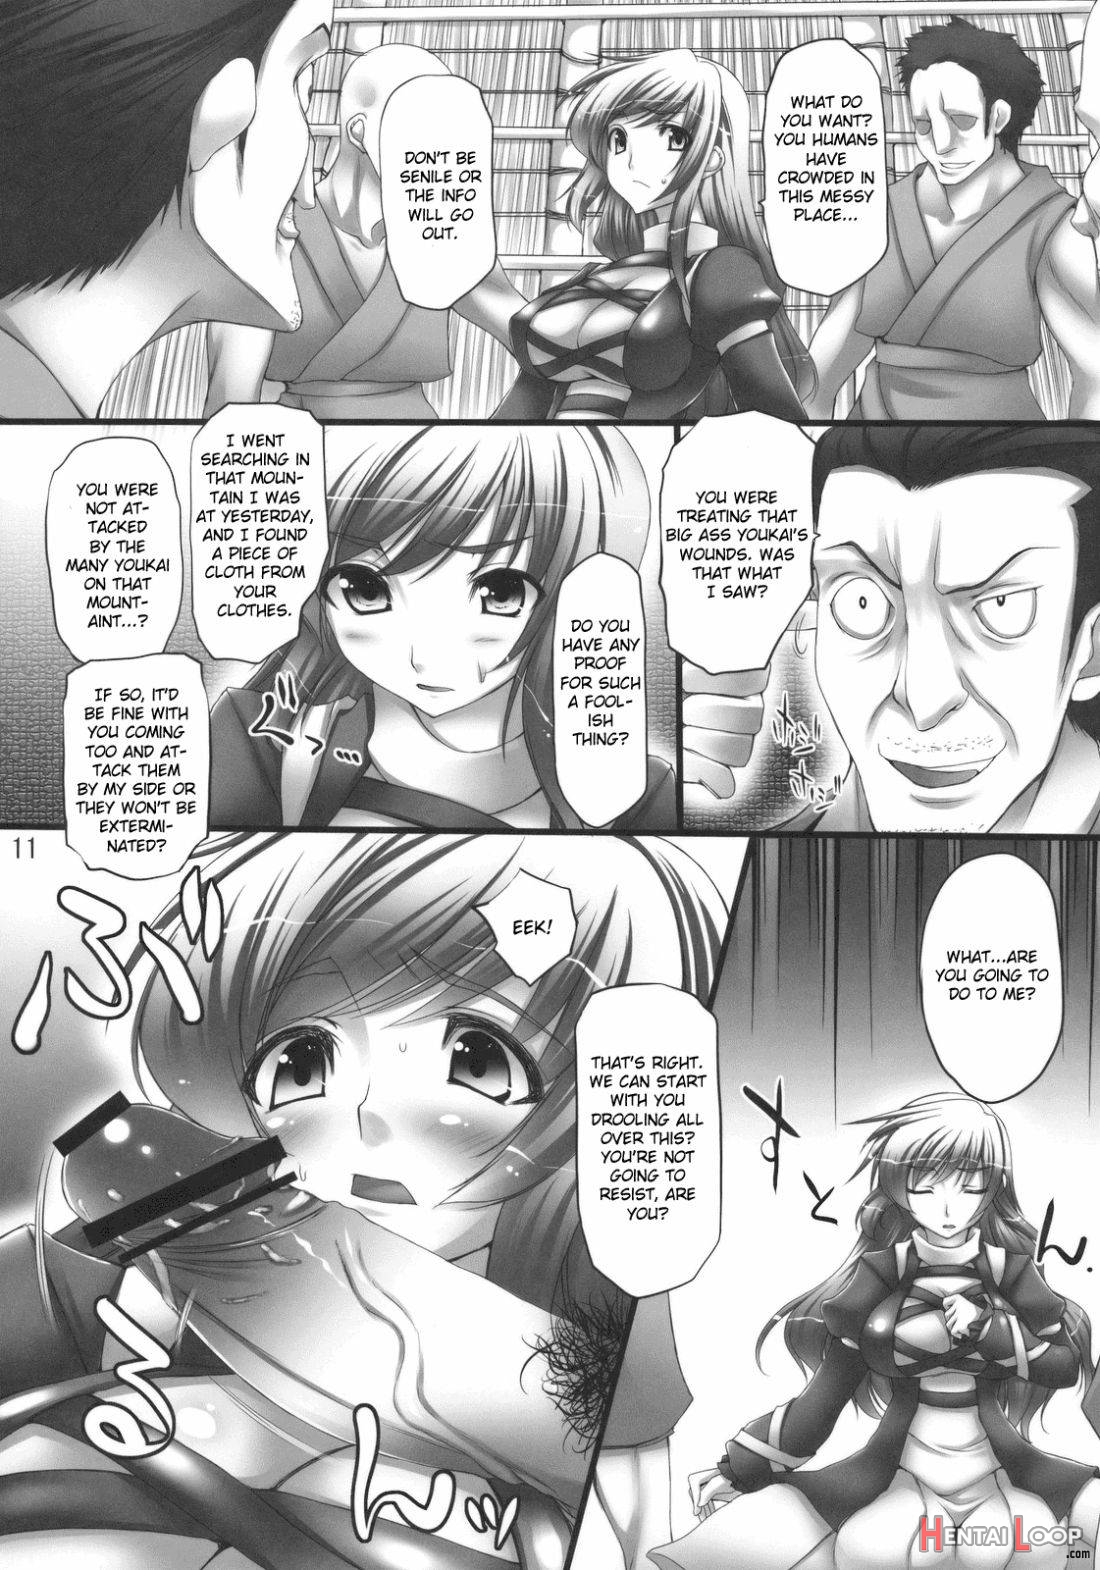 Betrayal page 8